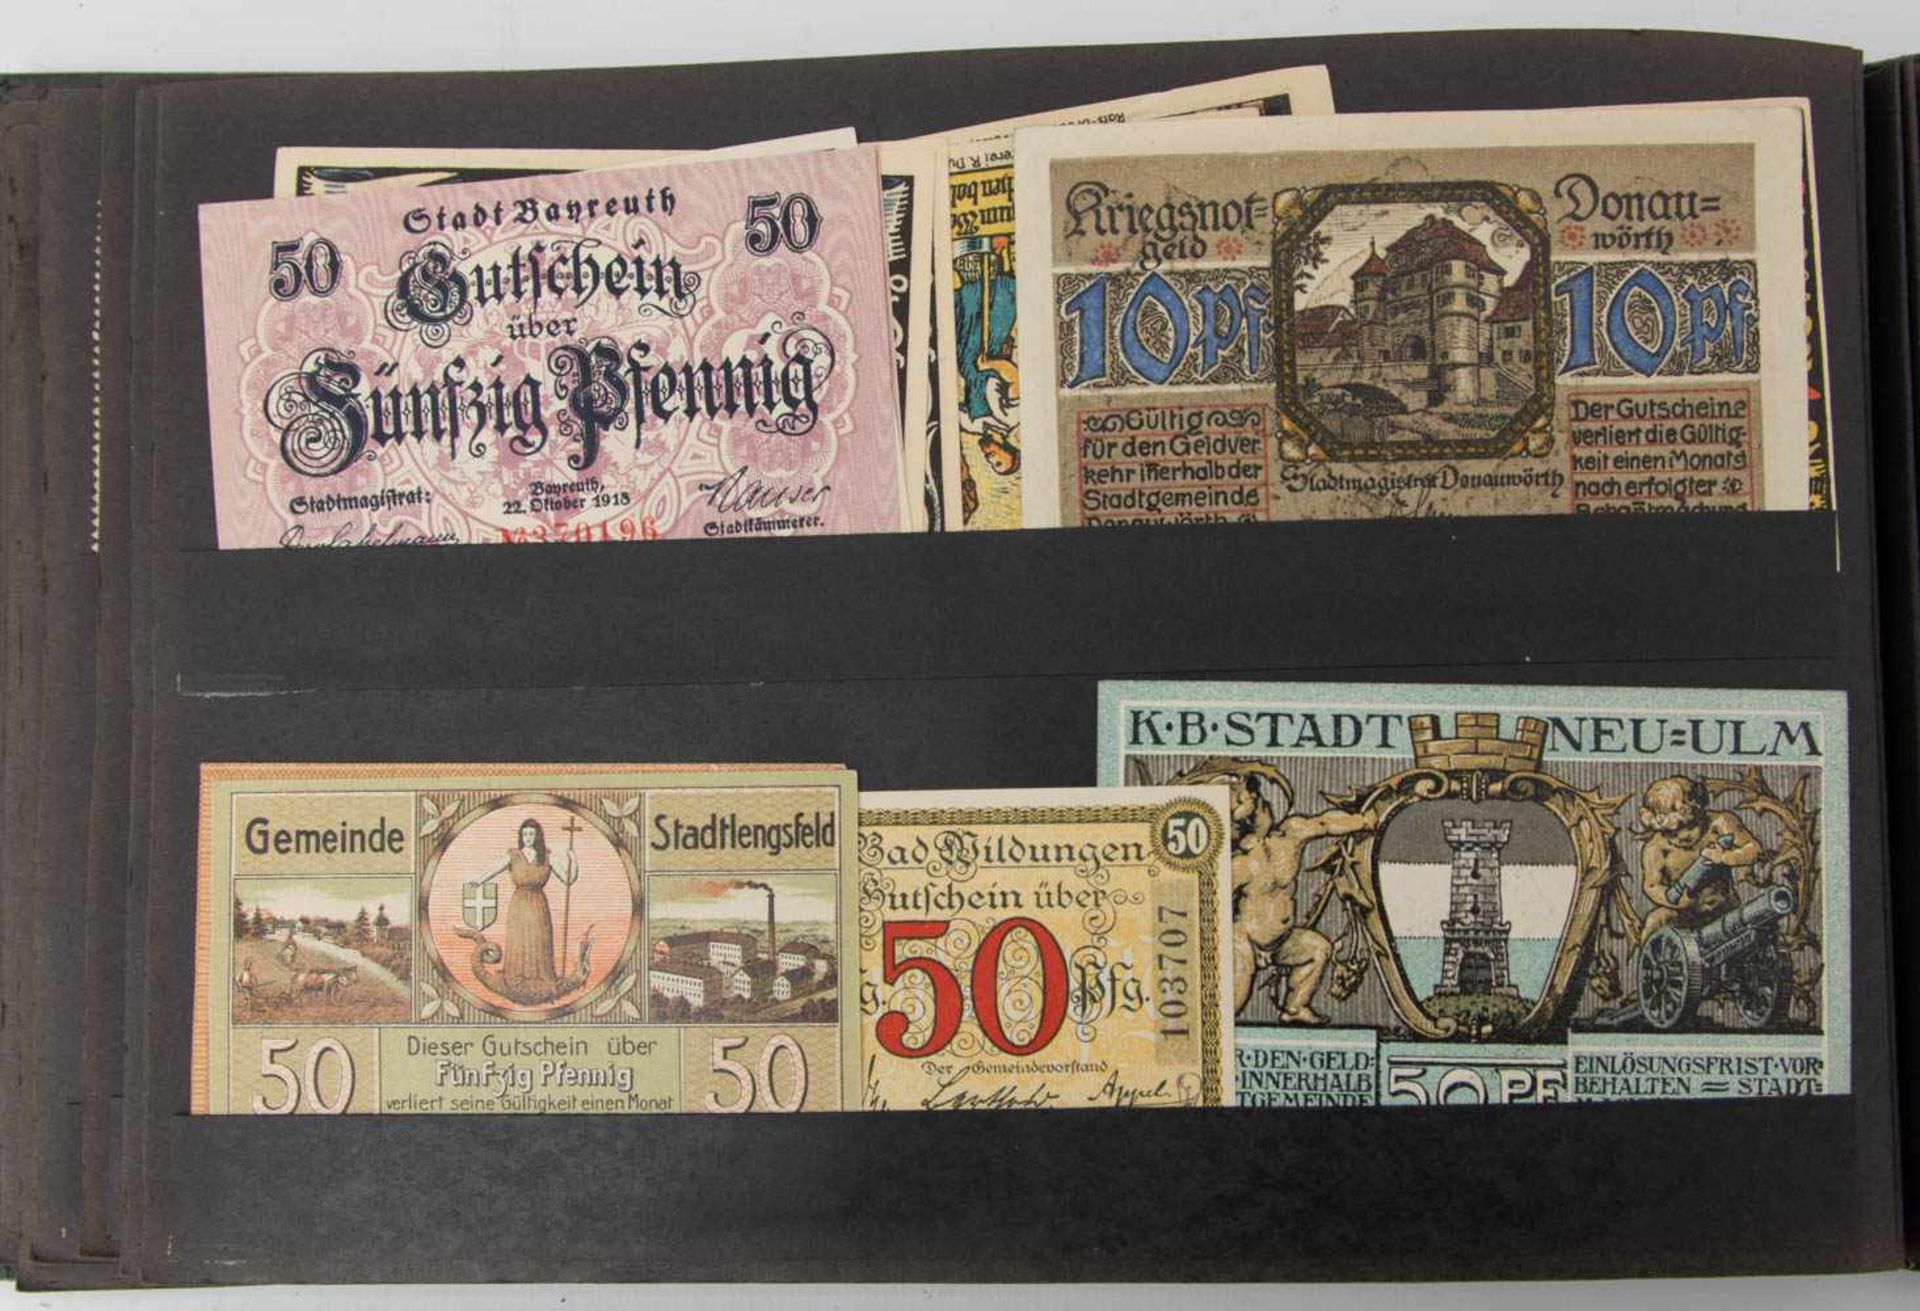 NOTGELD-ALBUM, Notgeld aus verschiedenen deutschen Städten, Anfang 20. Jh.26 x 17 cm - Bild 7 aus 12